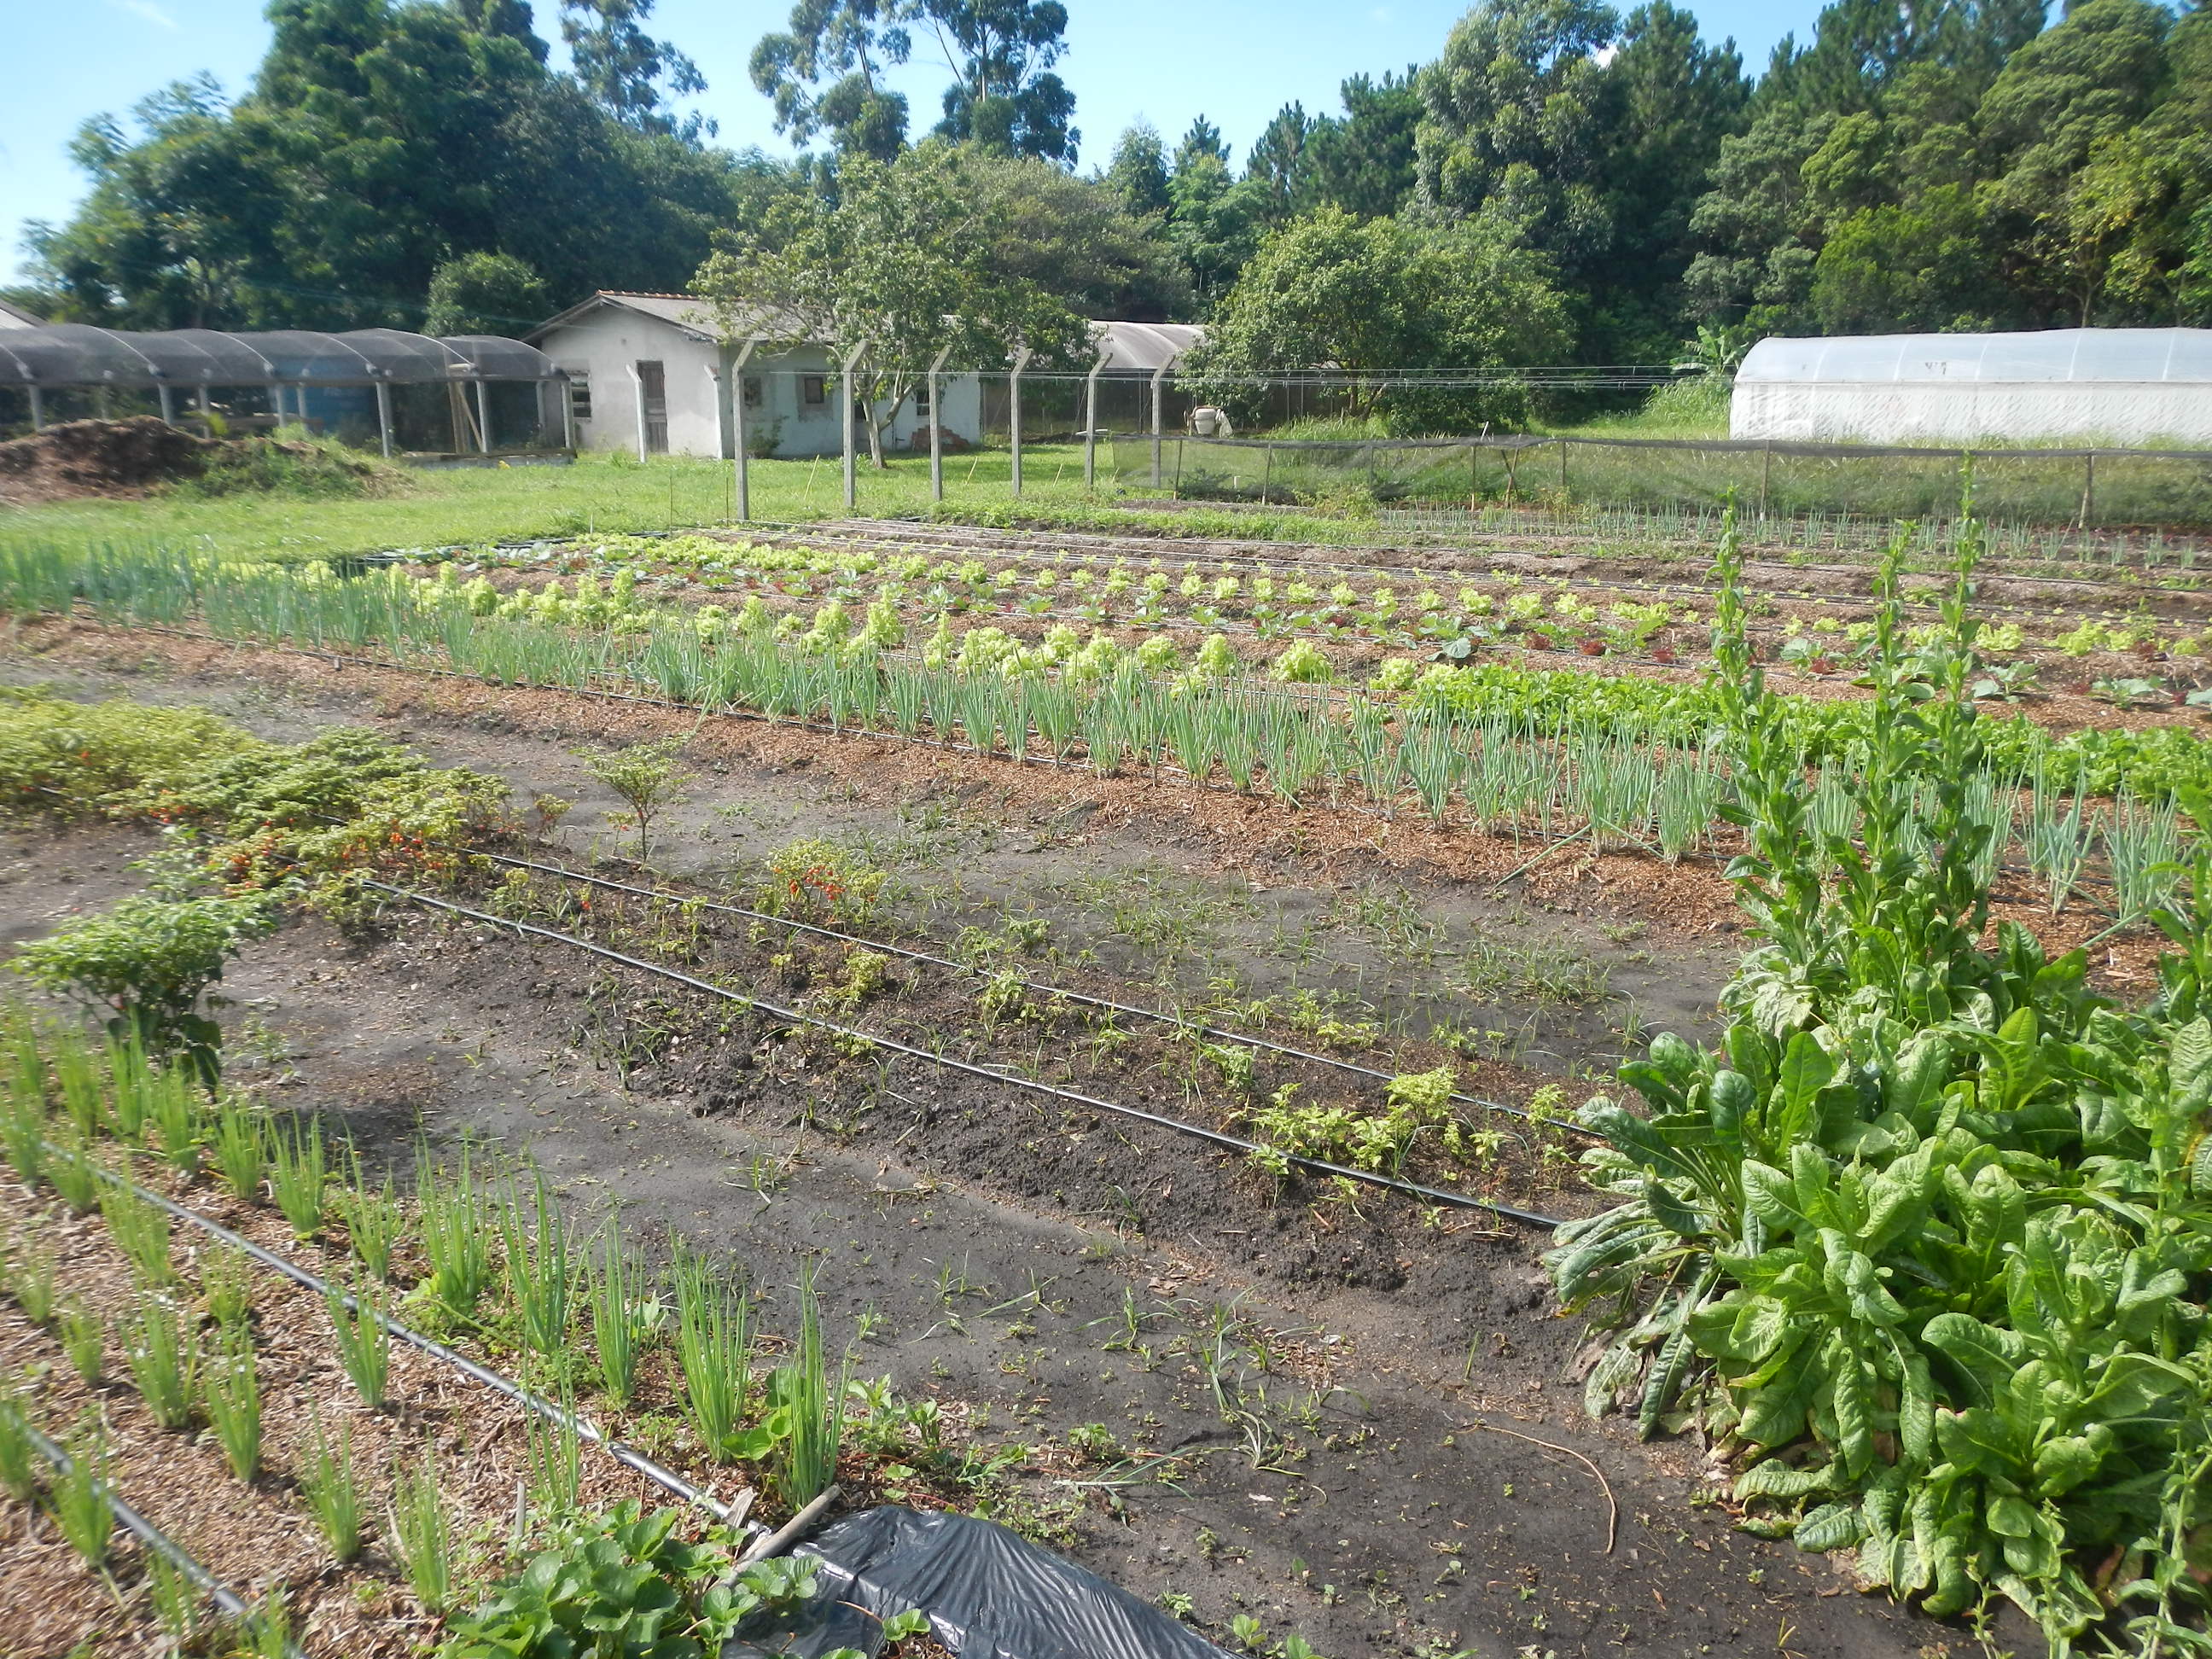 20141229 Fazenda Horta olericultura horticultura Carlinhos 002.jpg